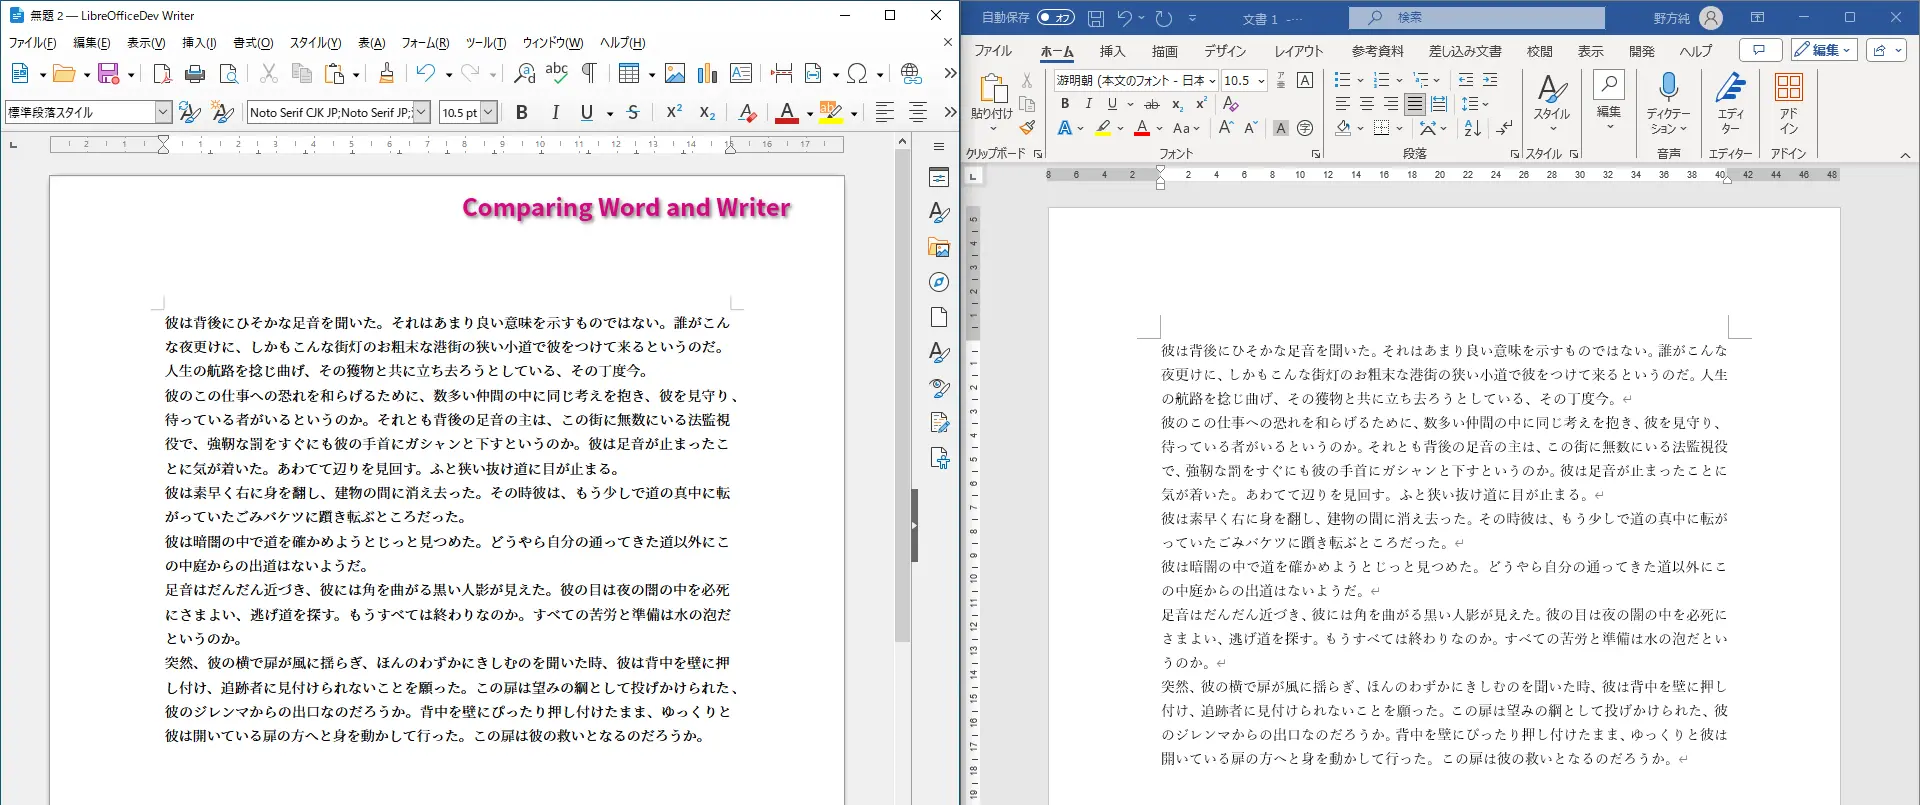 Zaslonska slika s primerjavo med programoma LibreOffice Writer in Microsoft Word